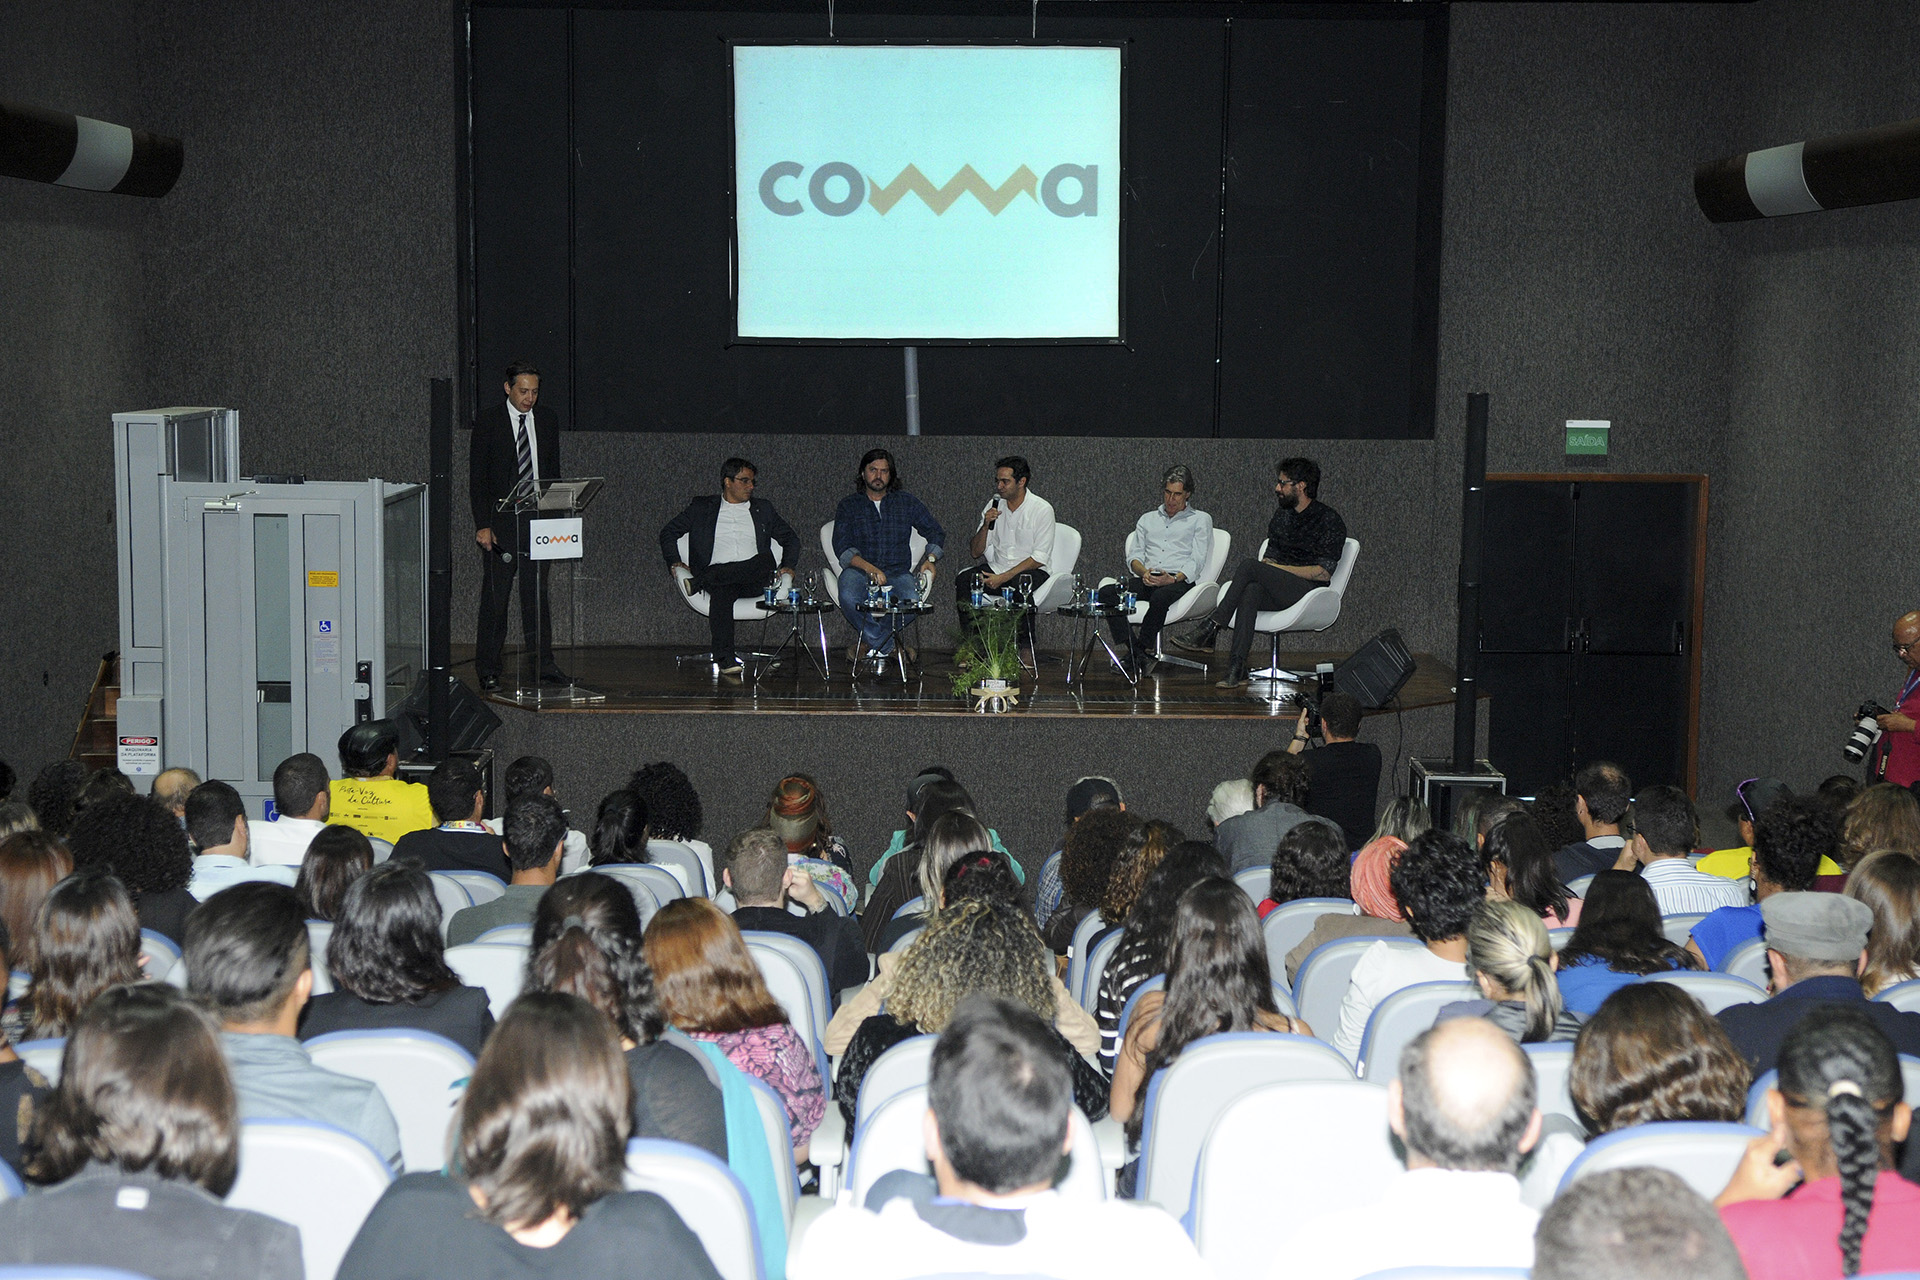 A Convenção de Música e Arte (CoMA) começou na tarde desta sexta-feira (4) com mesa de abertura na sala Buriti, do Centro de Abertura do CoMA ocorreu na tarde desta sexta-feira (4) no Convenções Ulysses Guimarães.